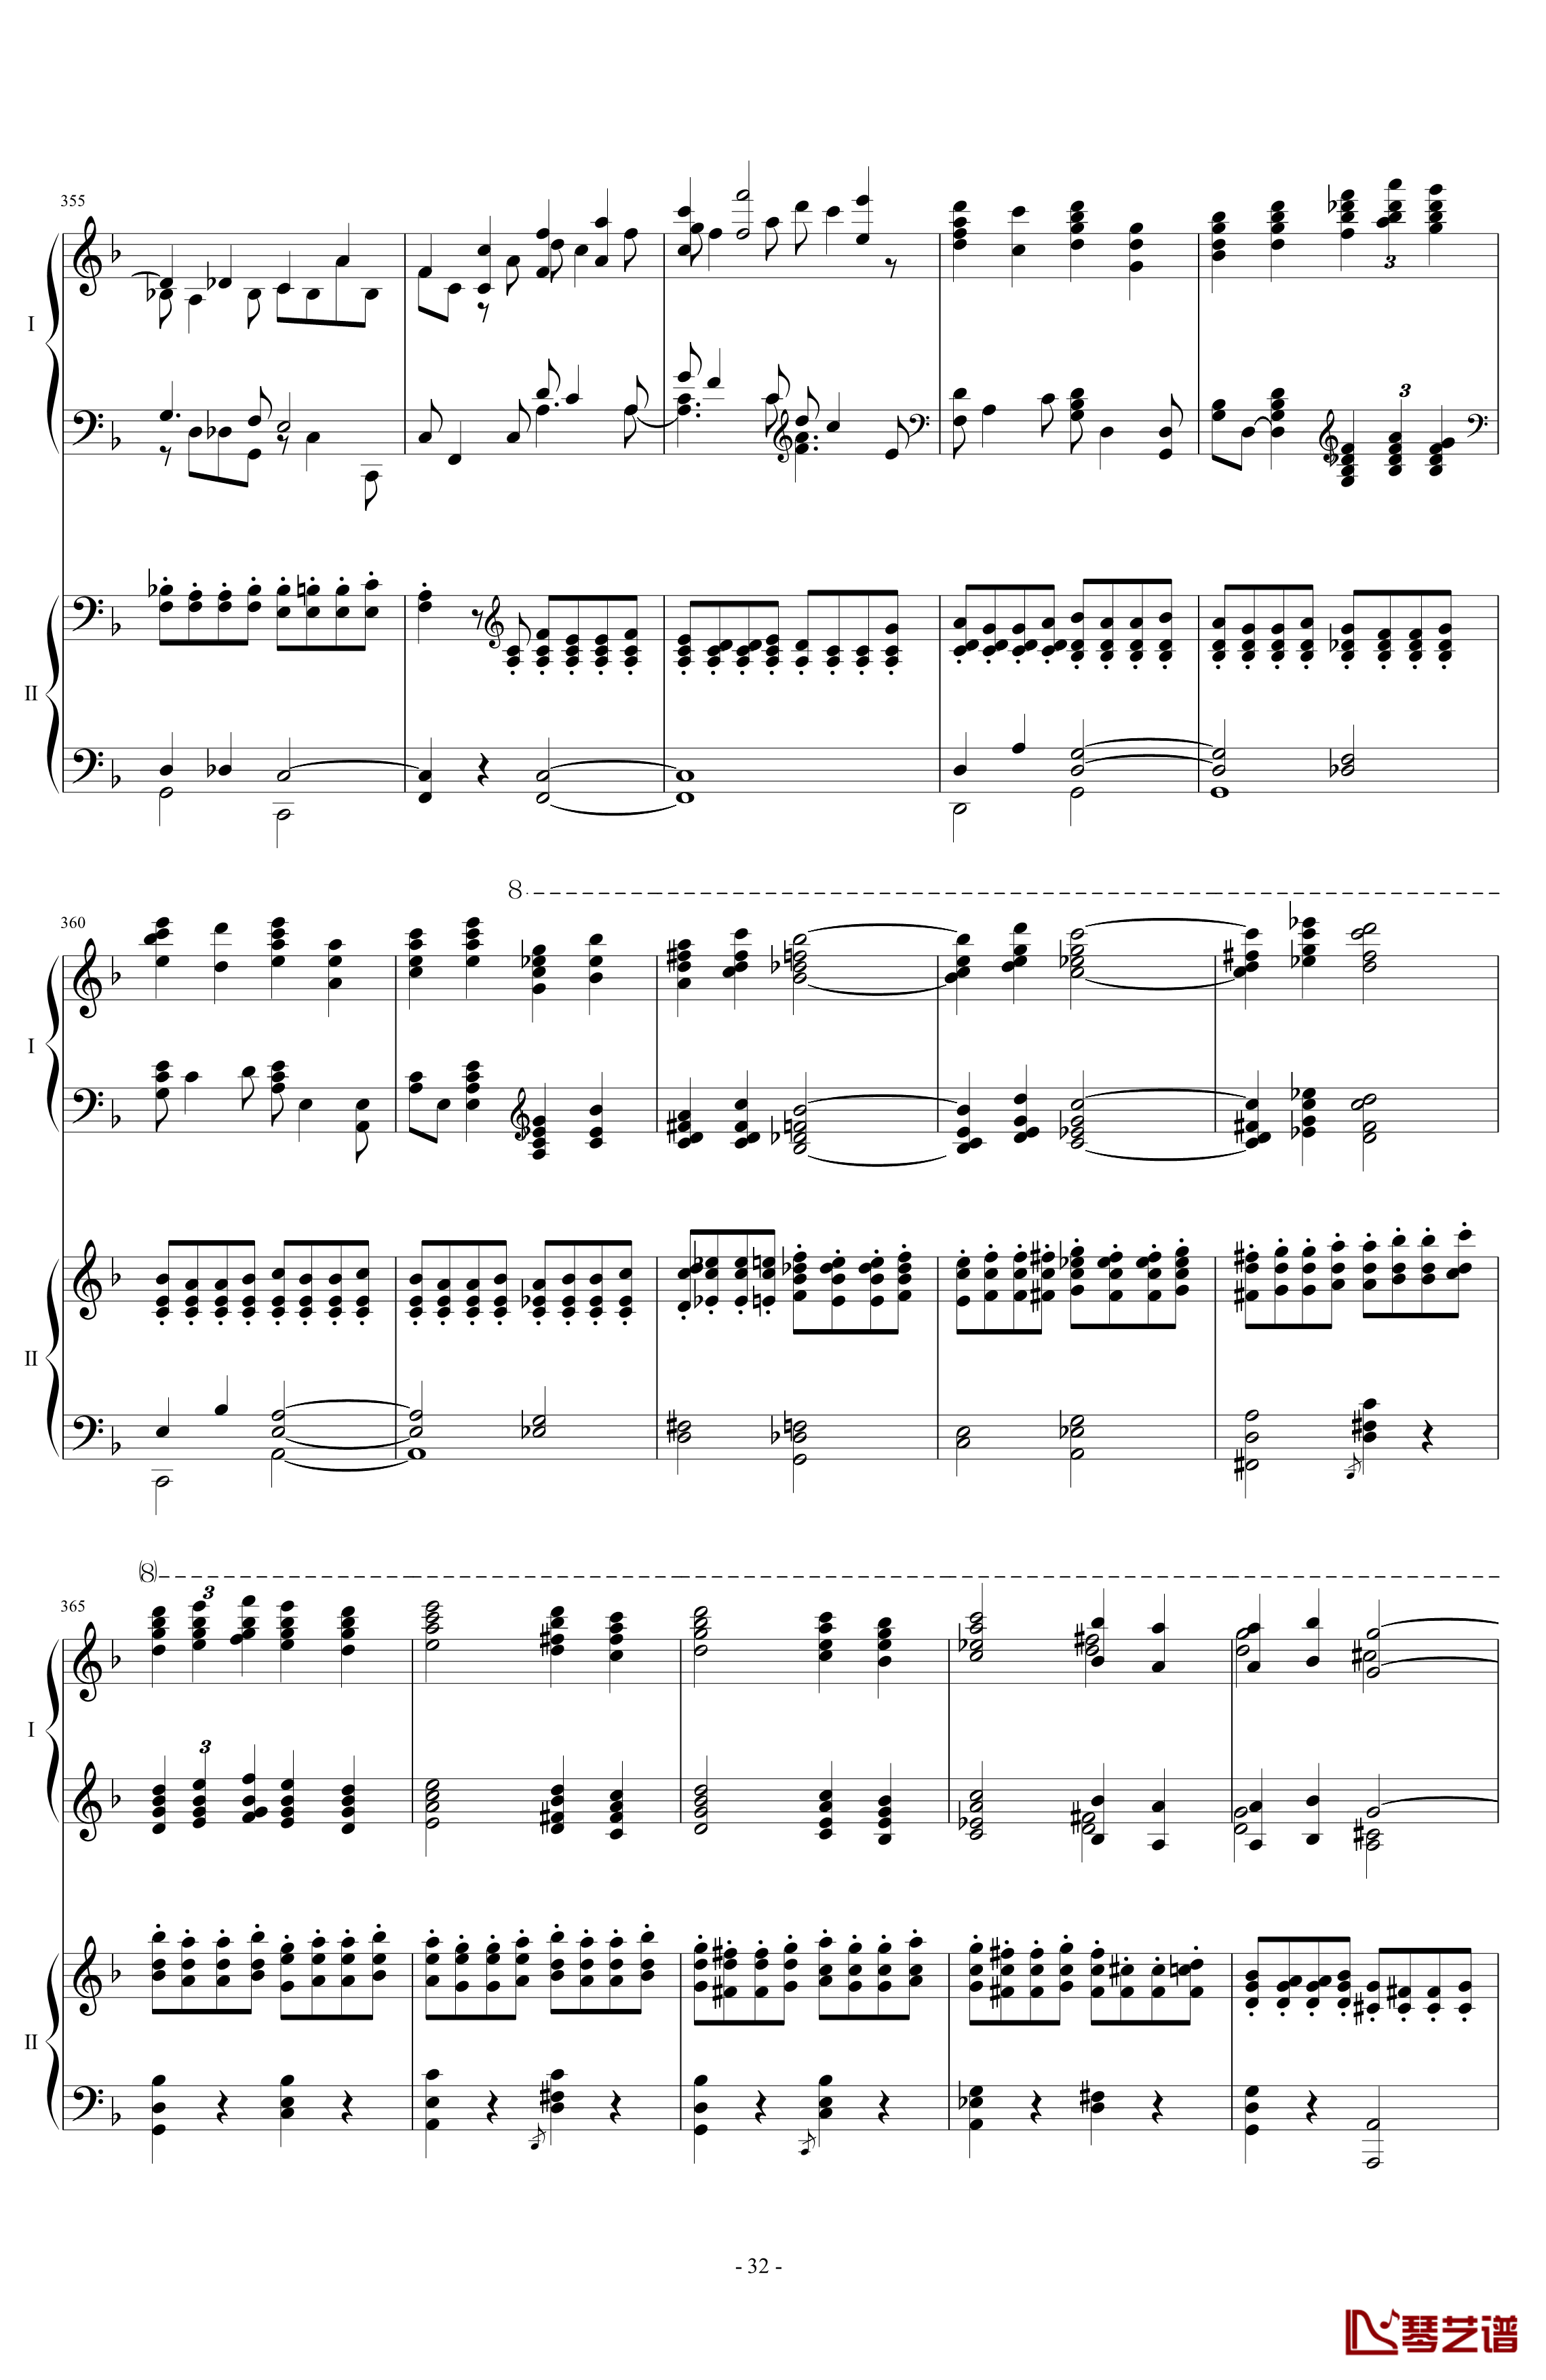 拉三第三乐章41页双钢琴钢琴谱-最难钢琴曲-拉赫马尼若夫32